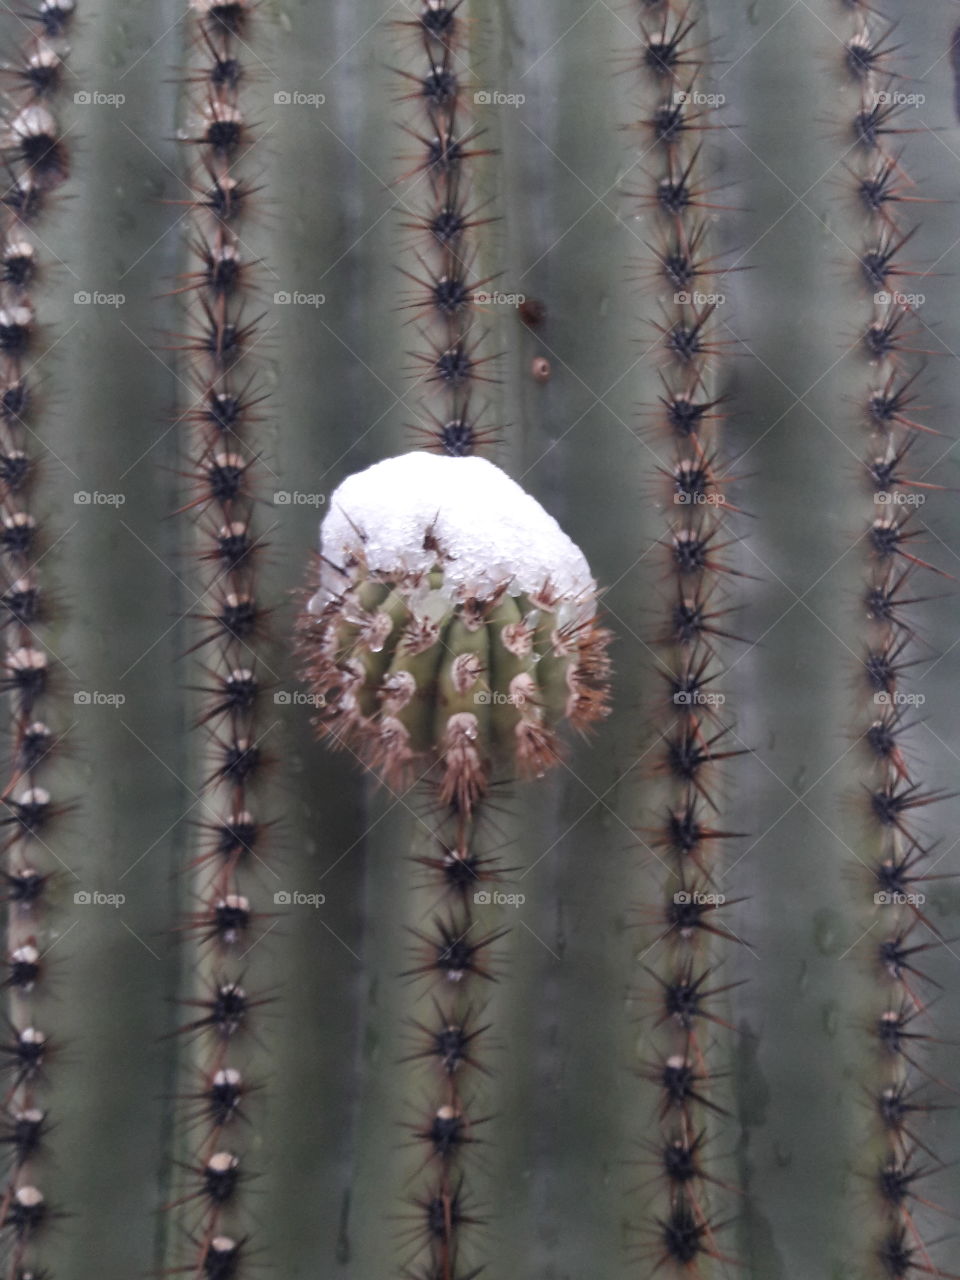 Snowy cactus nub